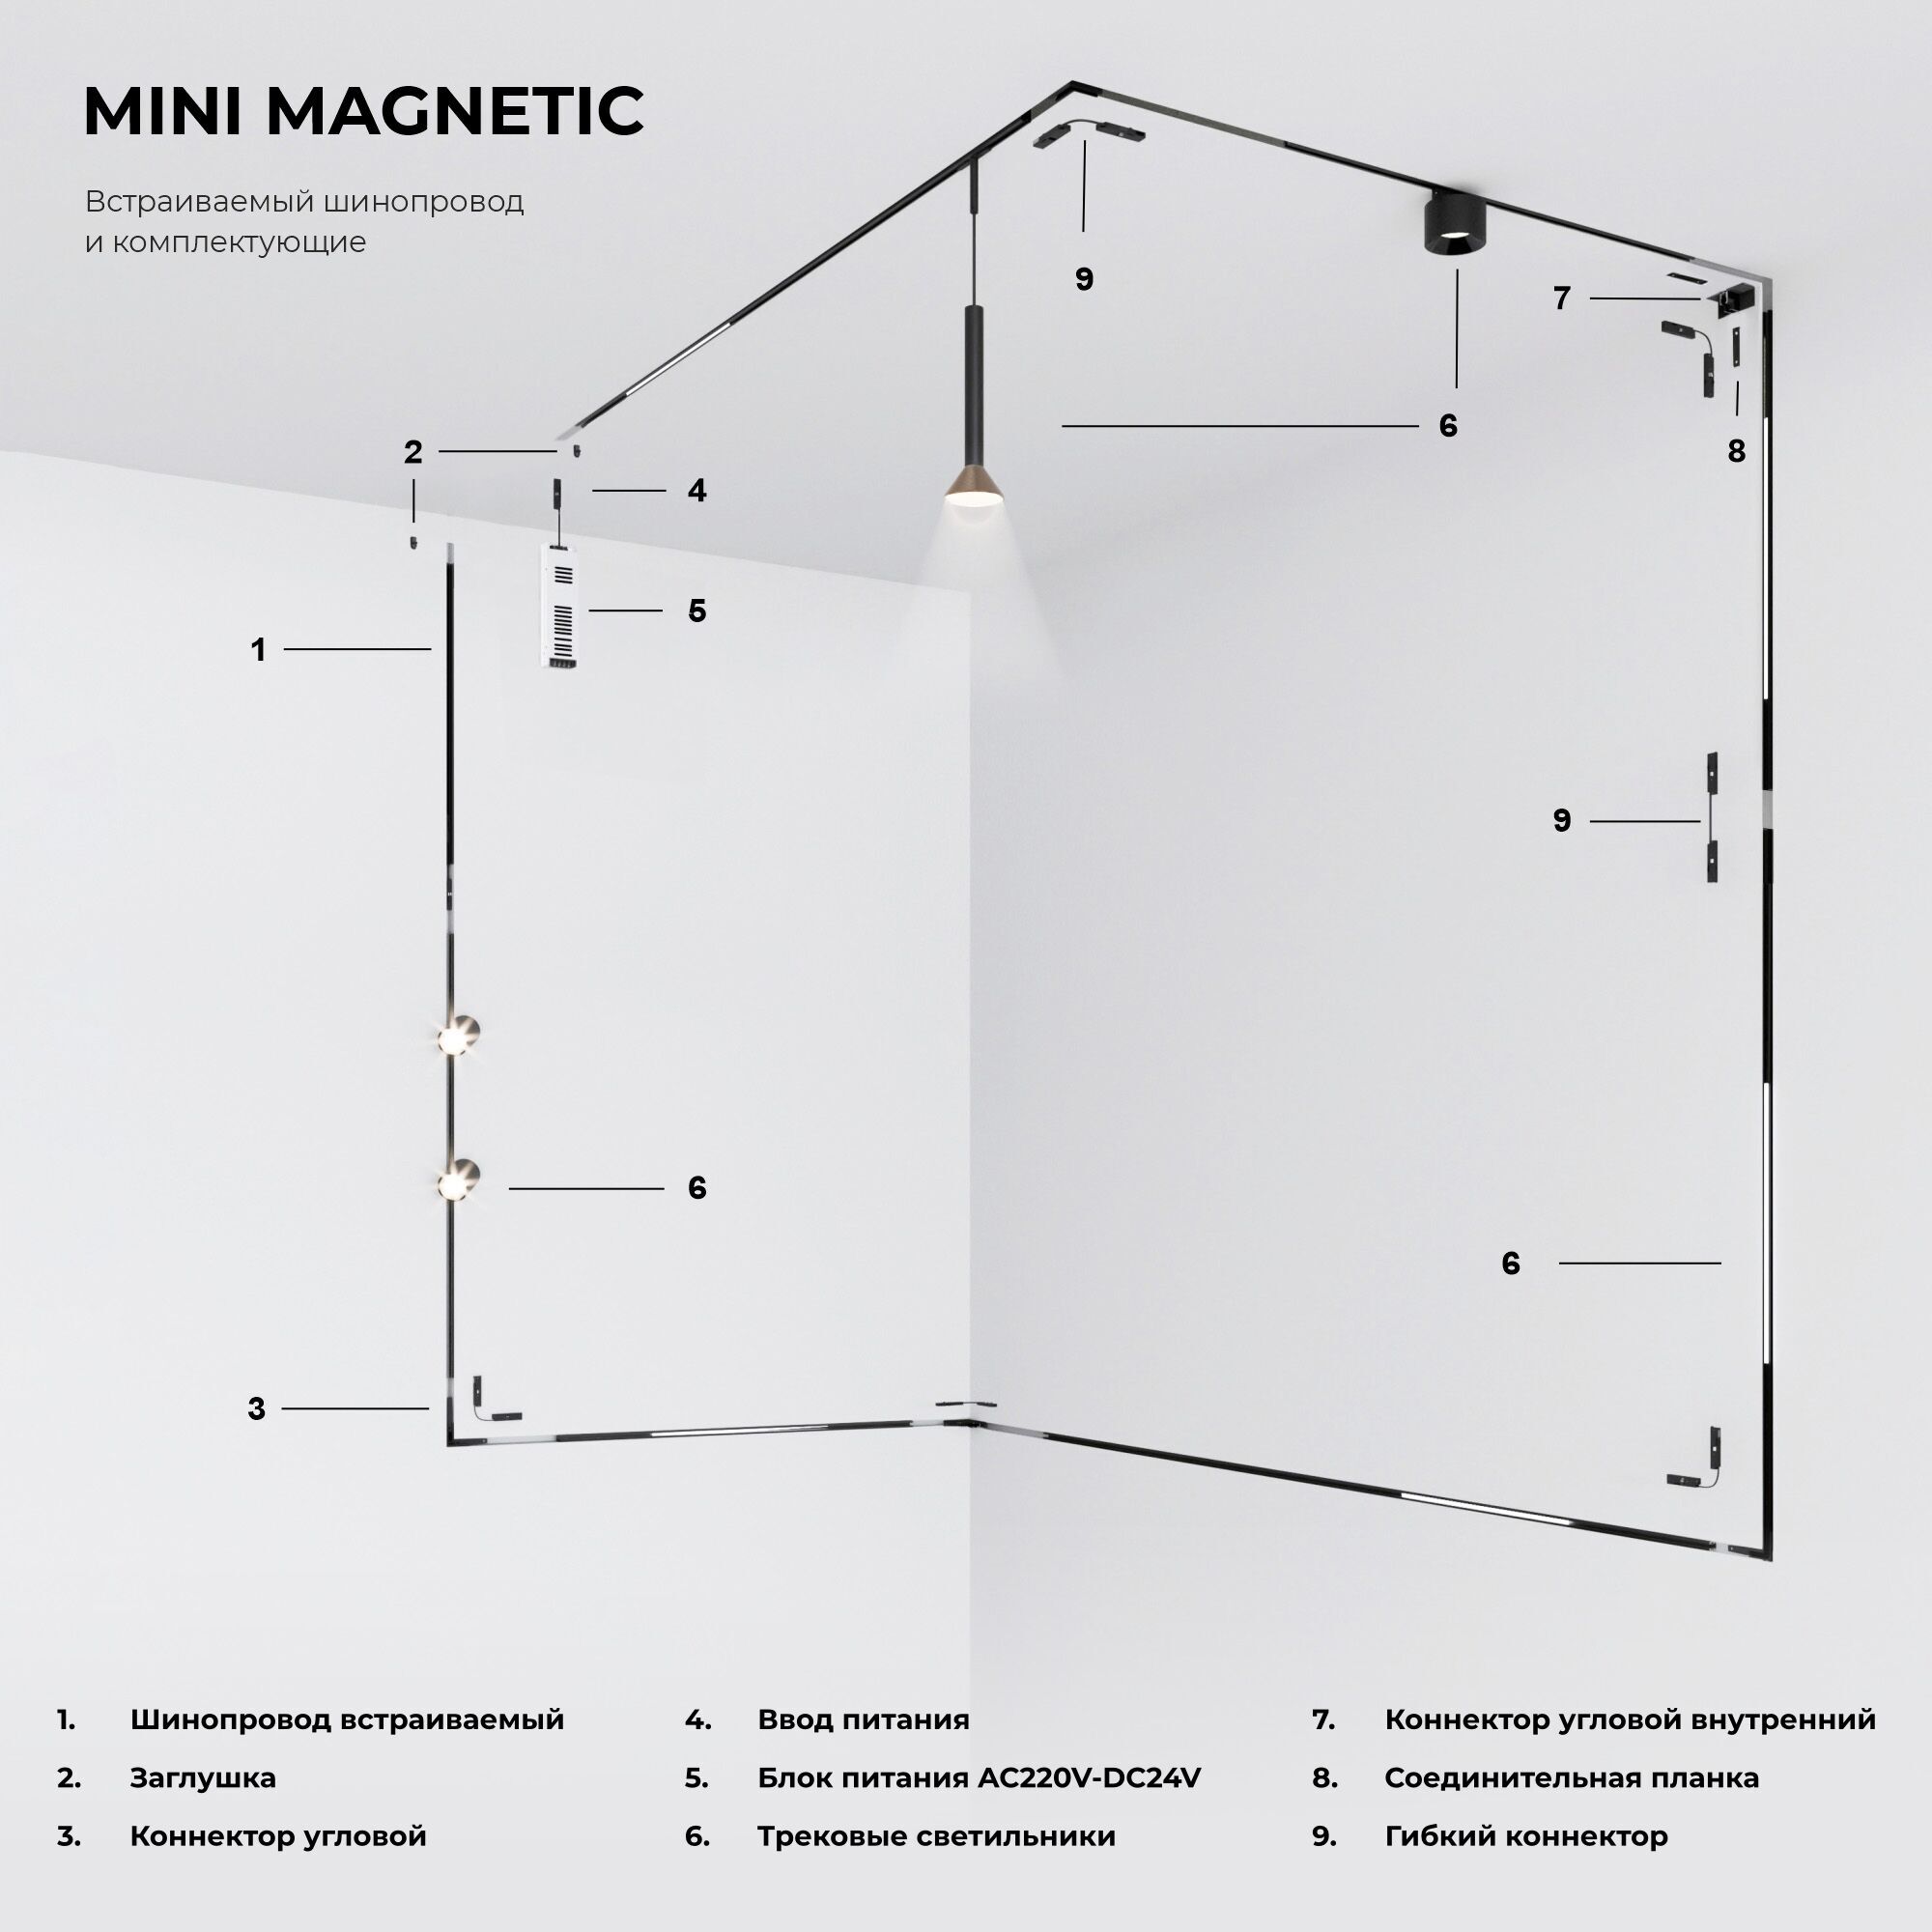 Mini Magnetic Соединительная планка для шинопровода 2 шт 85175/00